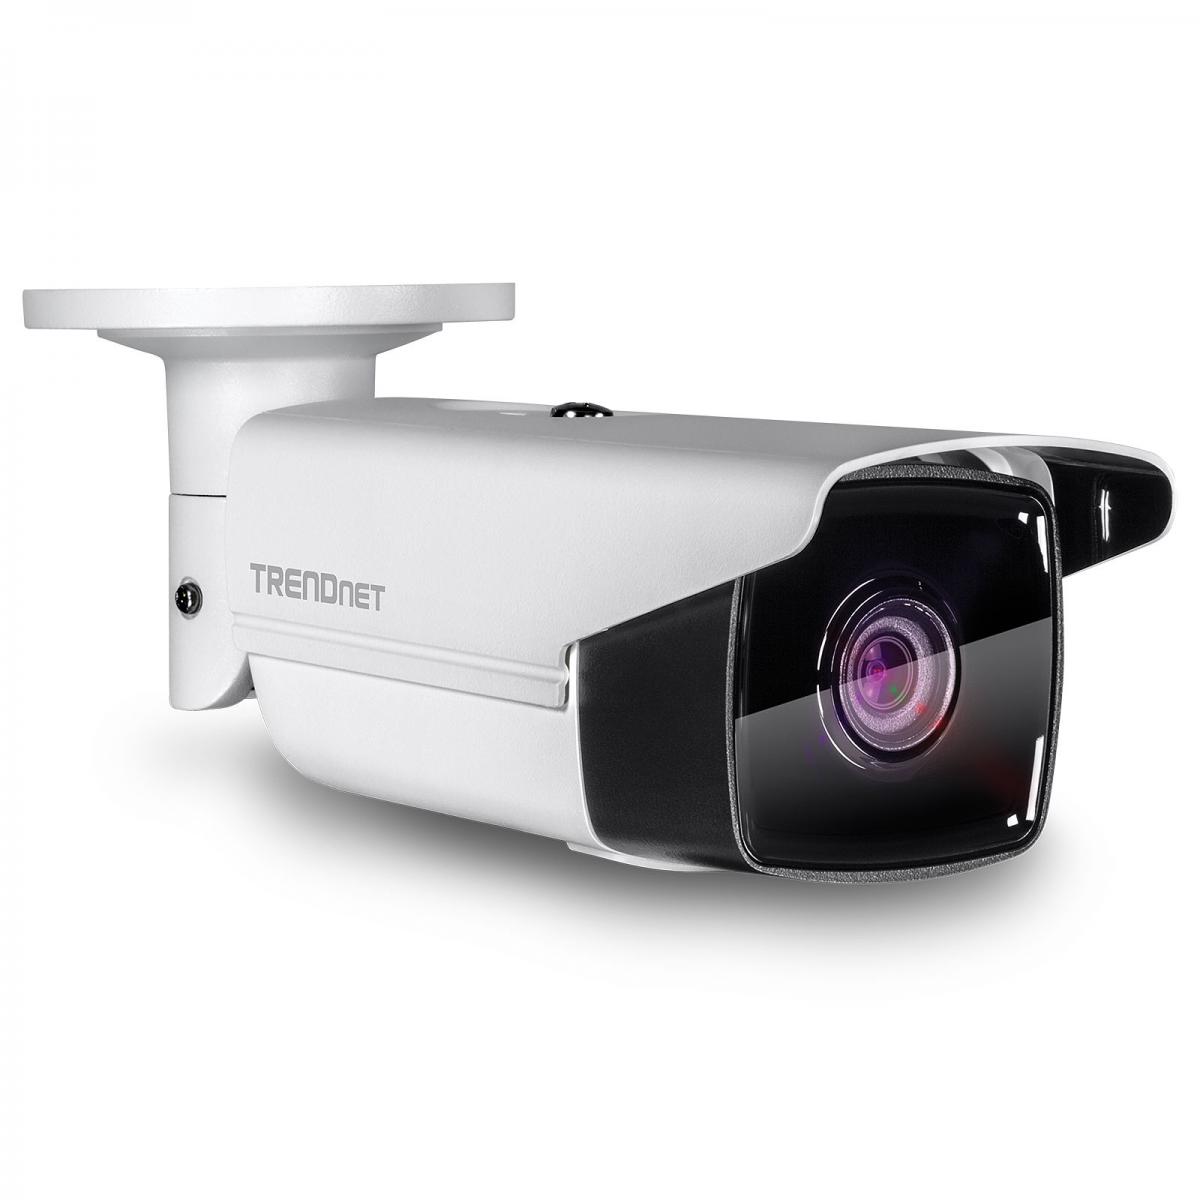 Trendnet - TRENDNET TV-IP1313PI - Caméra de surveillance connectée